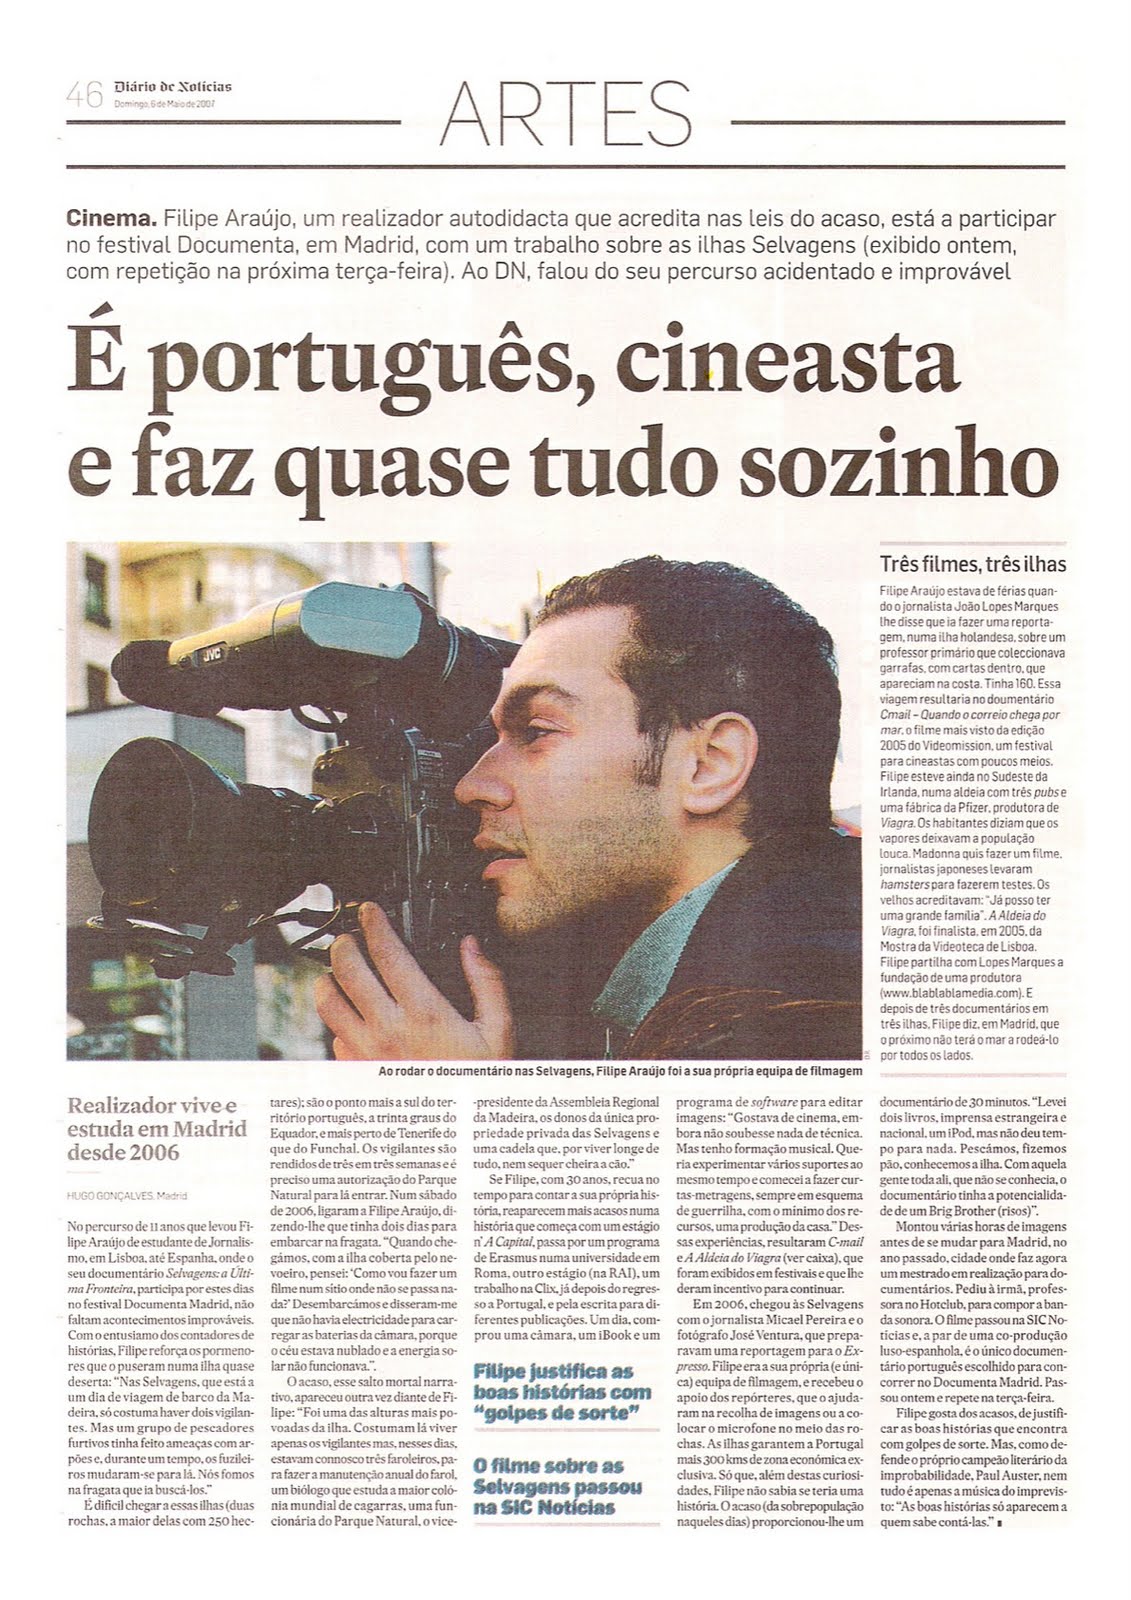 Diário de Notícias - newspaper article (Portuguese)